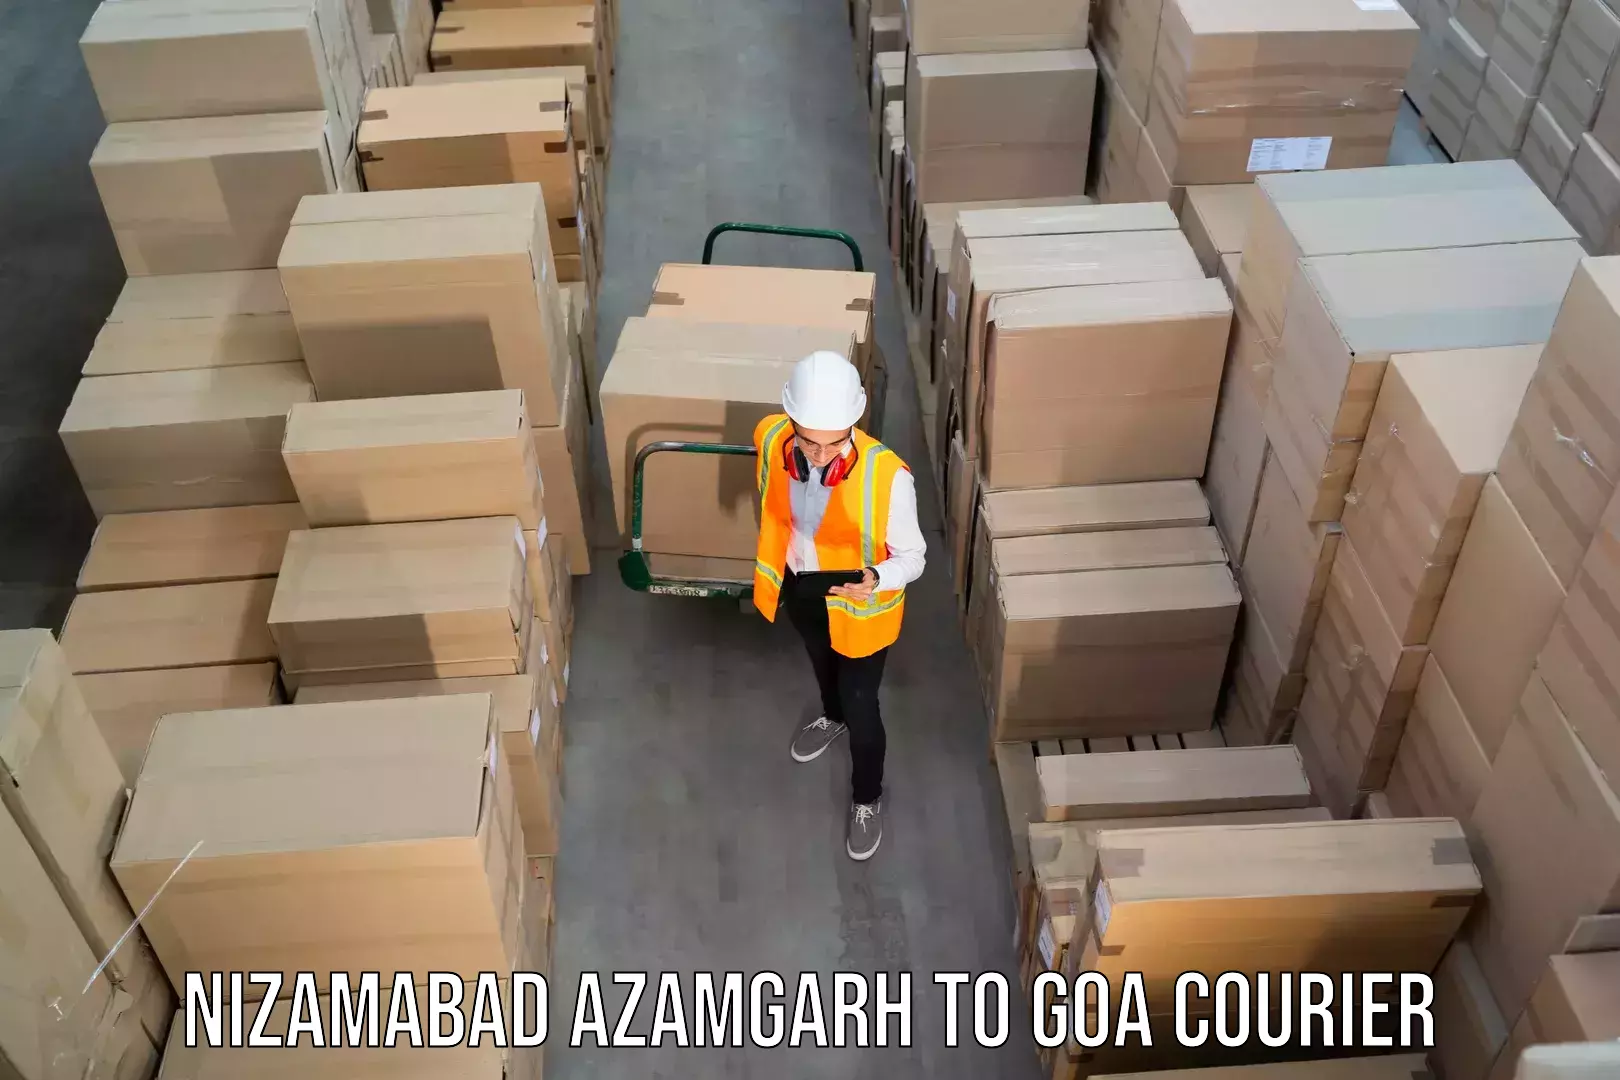 Subscription-based courier Nizamabad Azamgarh to Goa